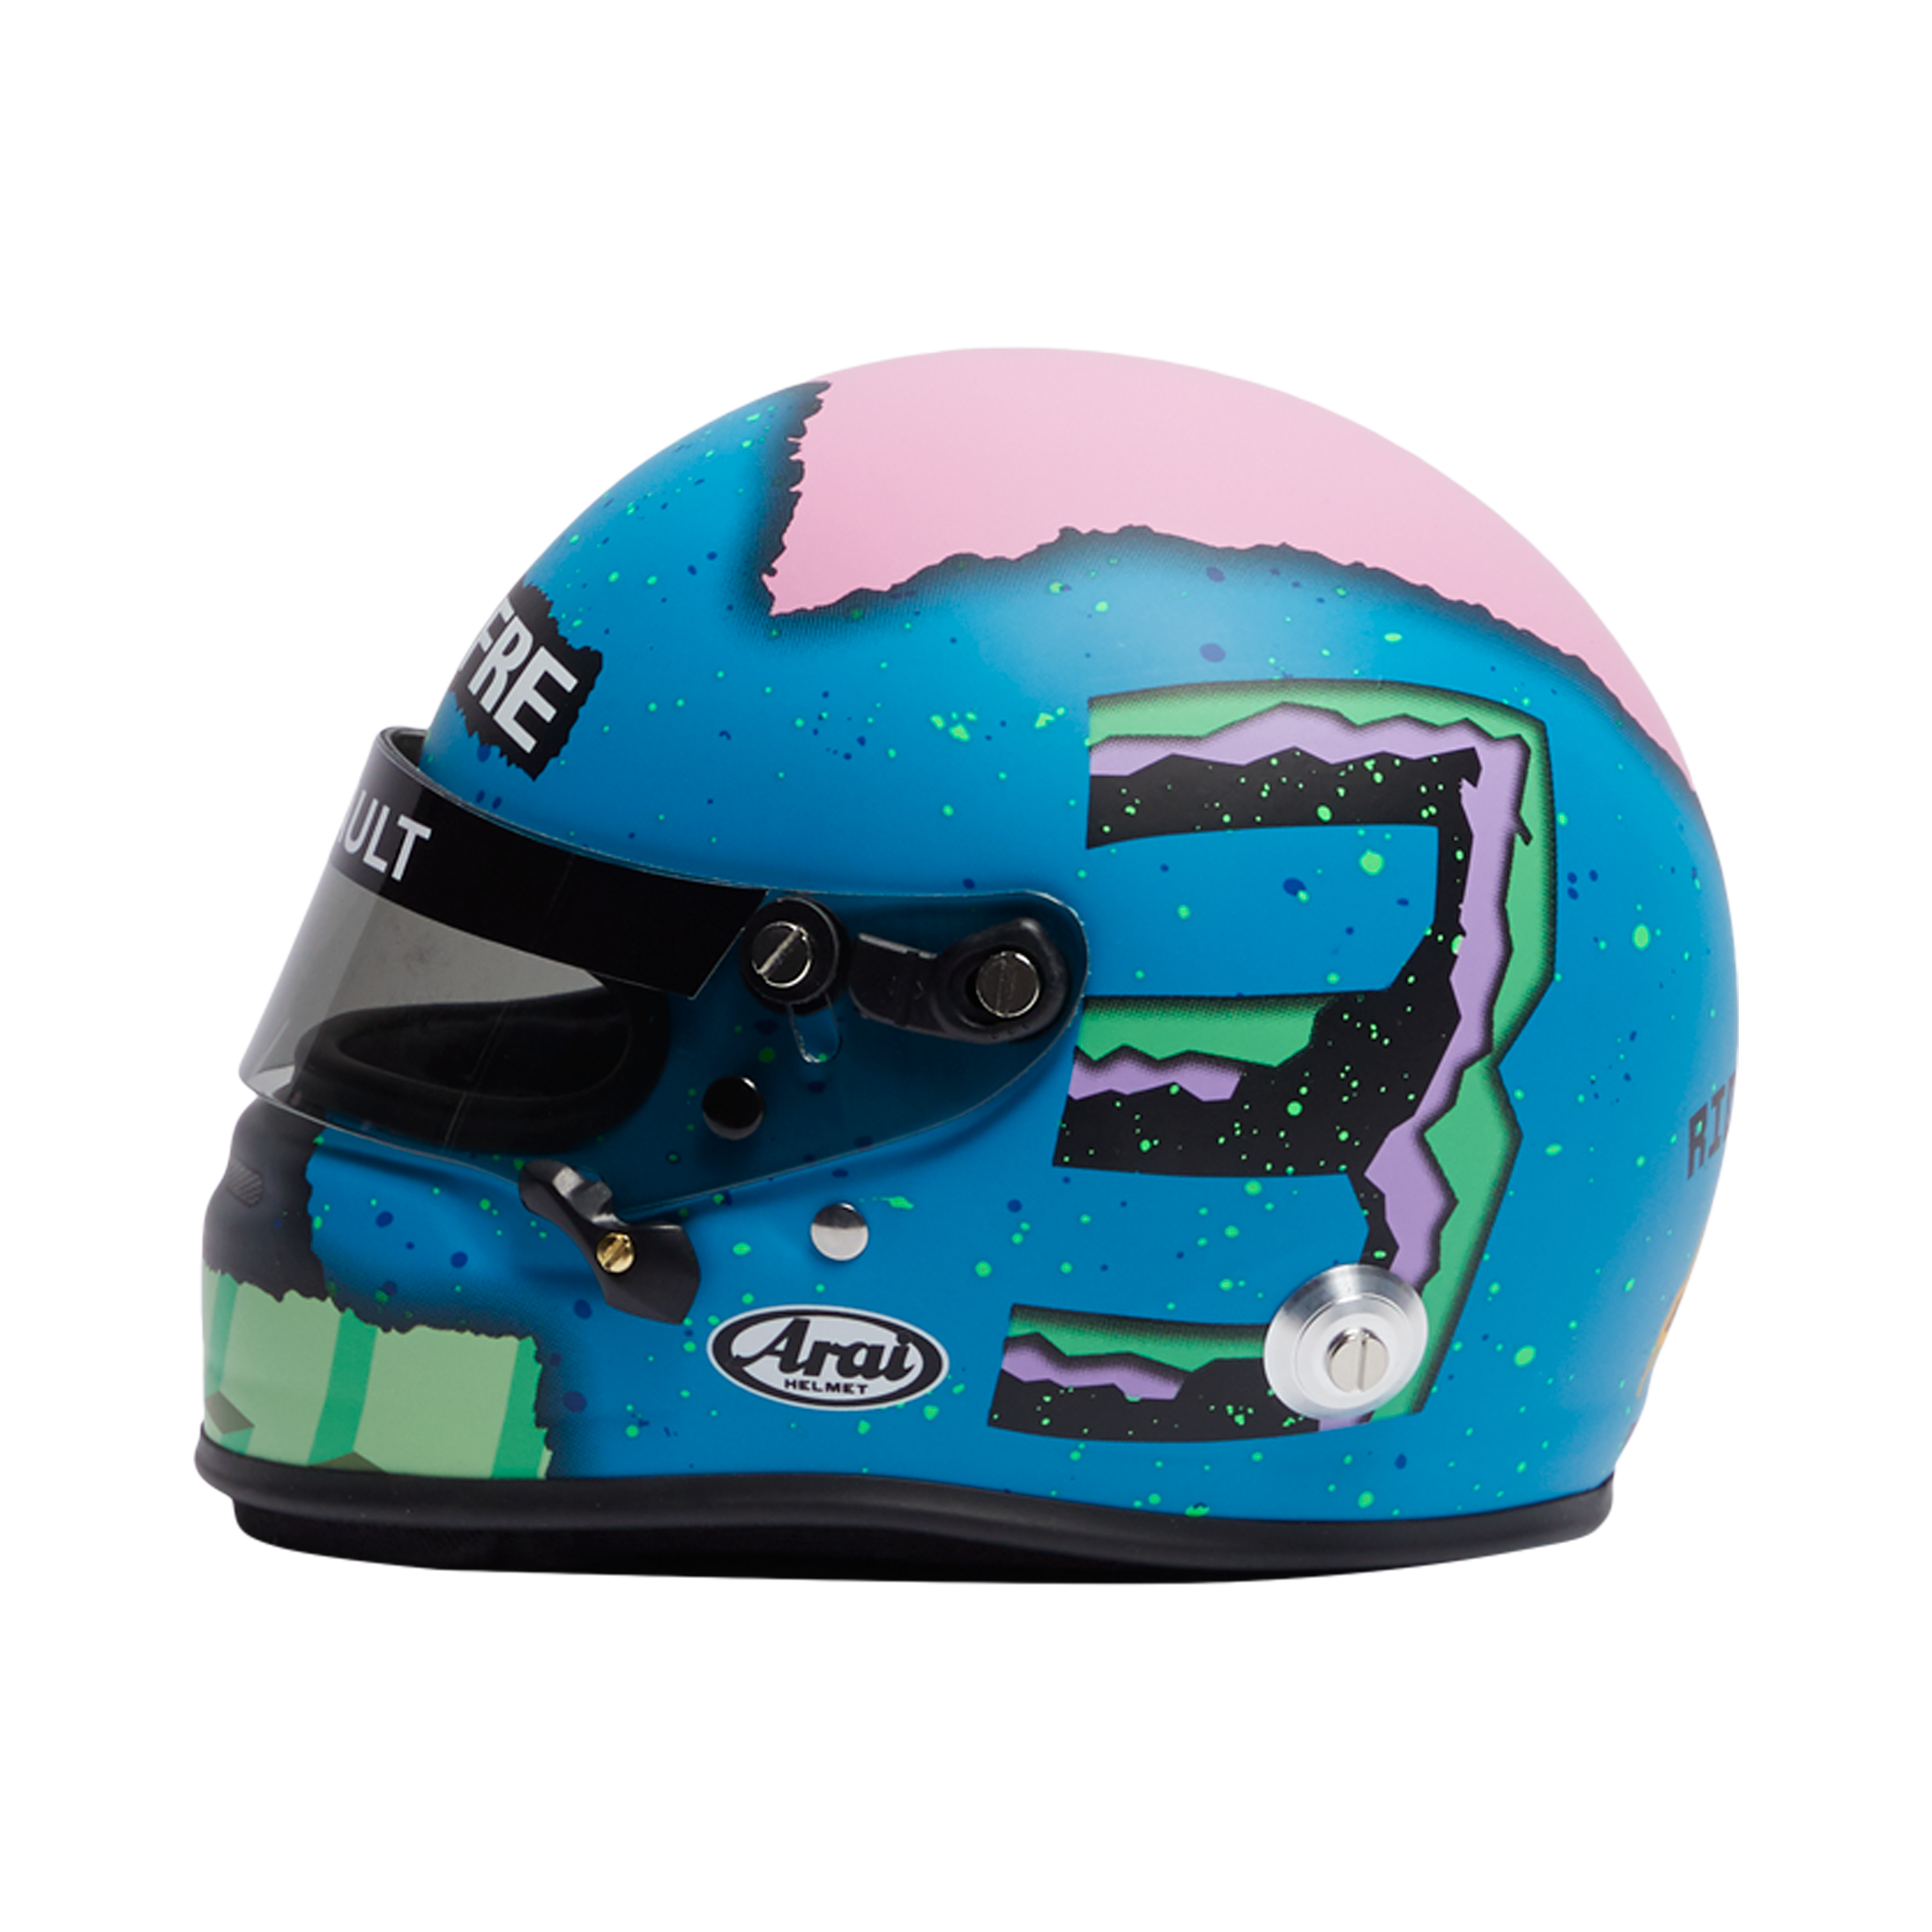 2019 Daniel Ricciardo Mini Helmet